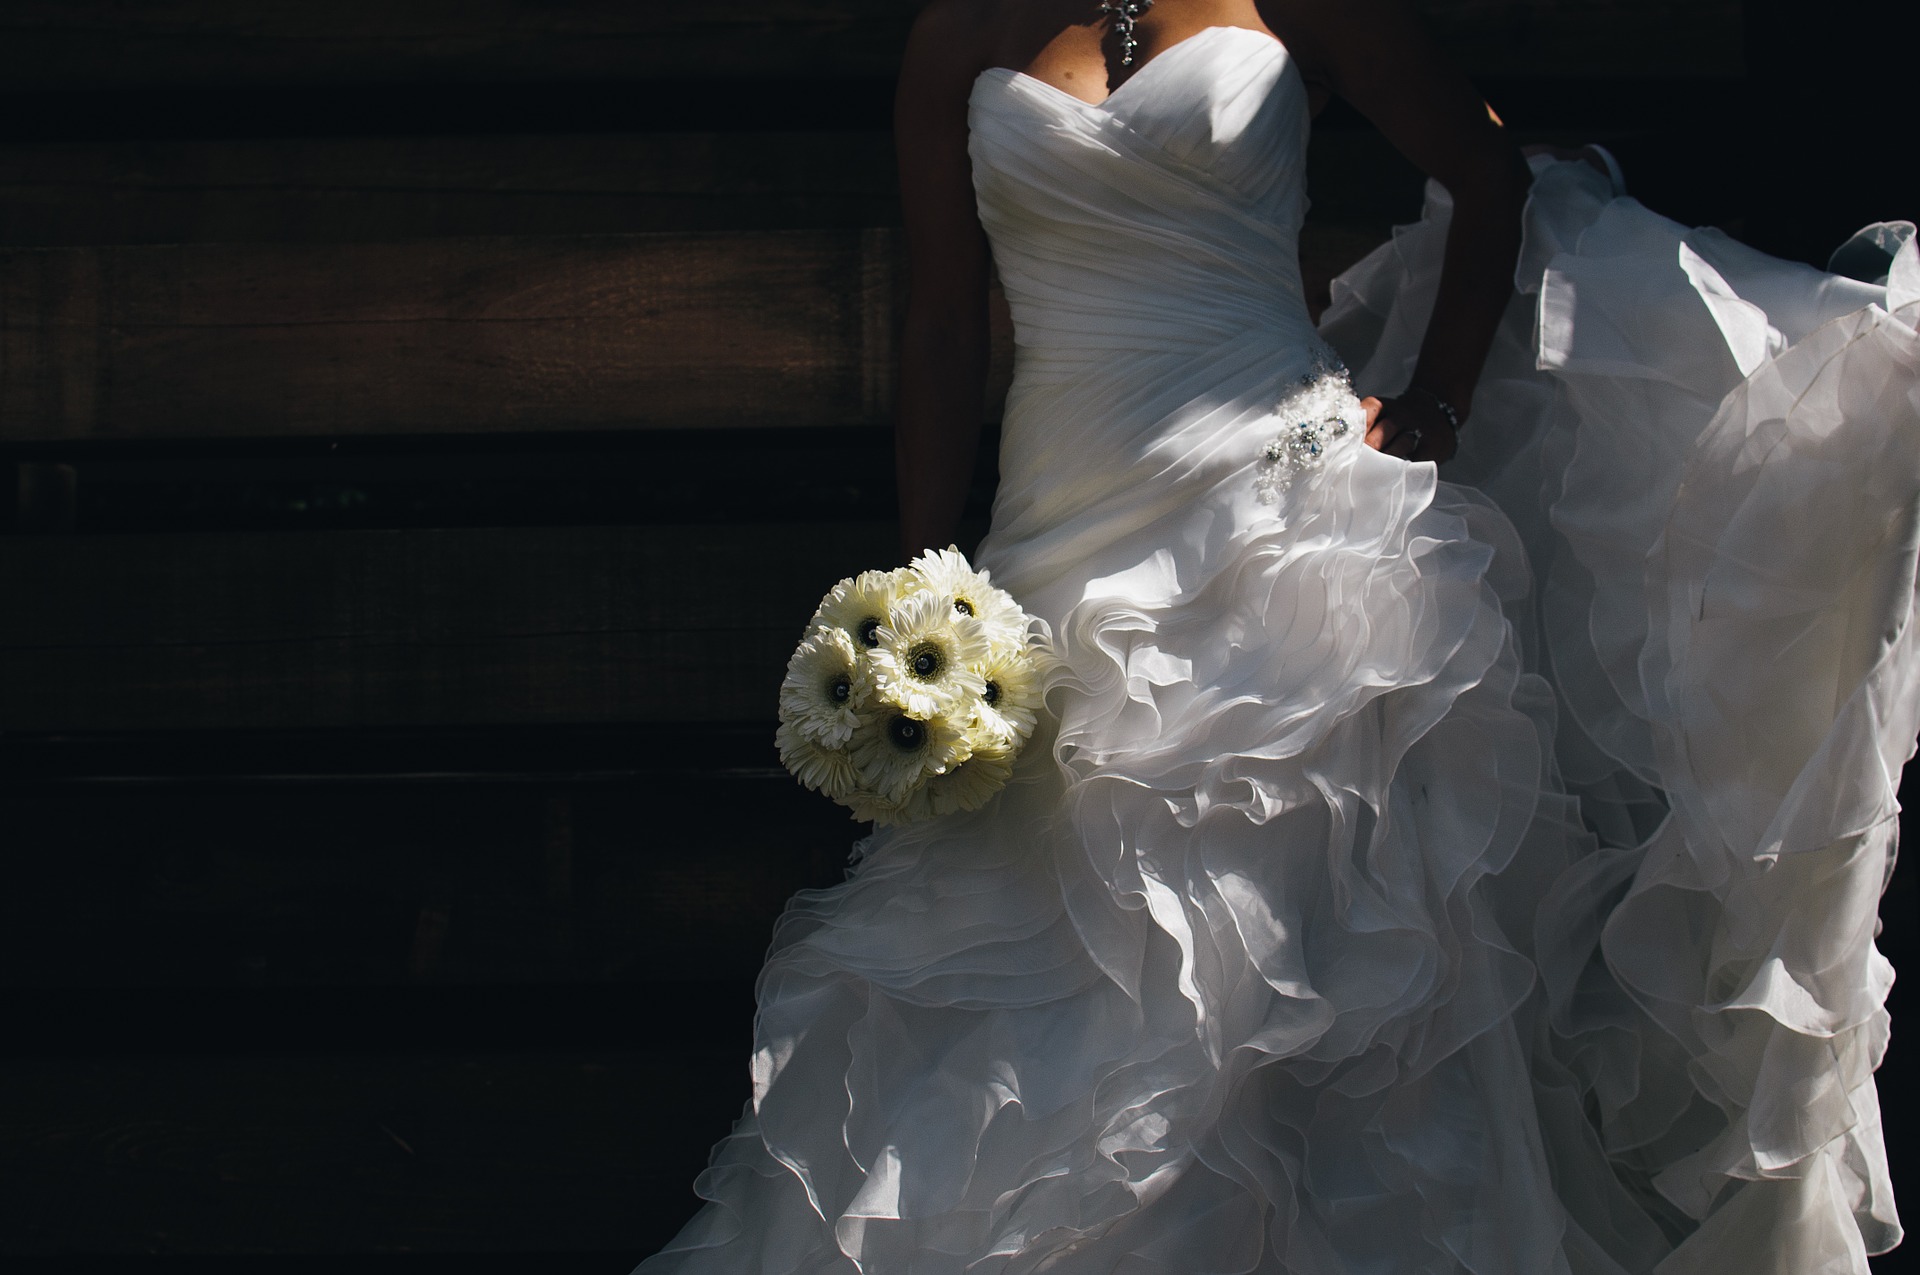 Prova abito da sposa: tutte le risposte alle domande più frequenti